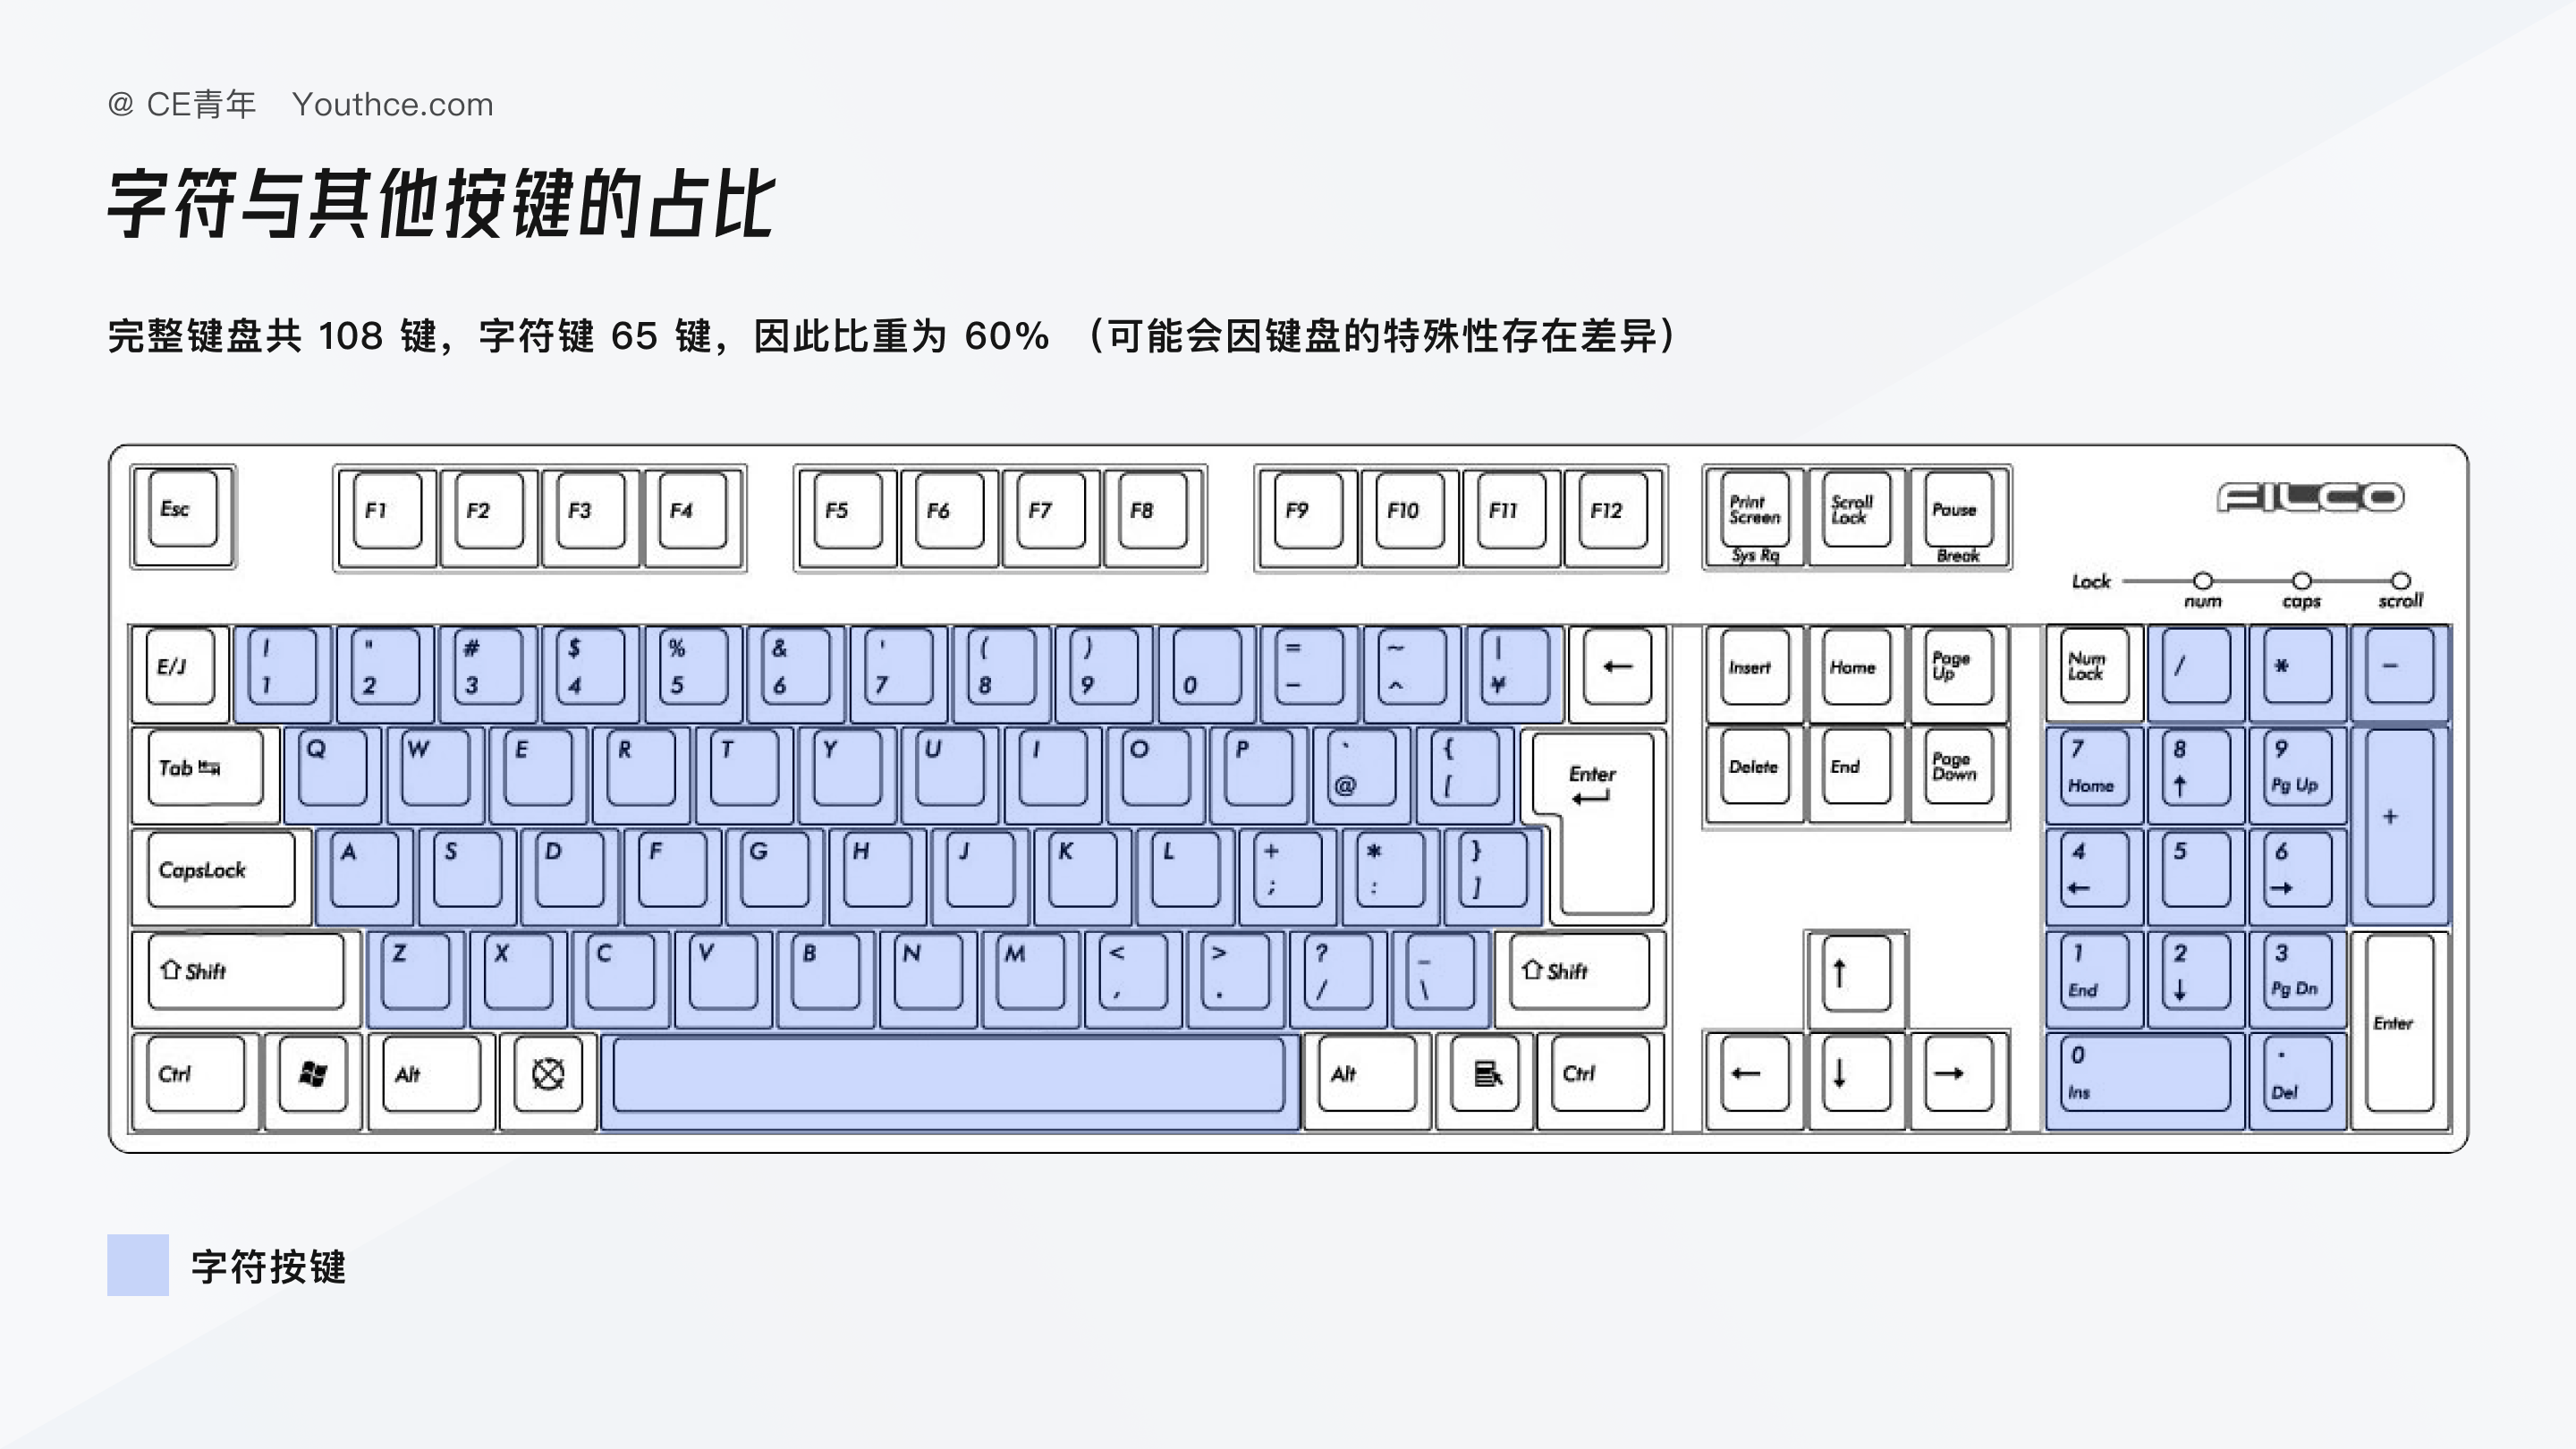 的键盘当中,字符按键 只占到了整个键盘数量的 60% (完整键盘共 108